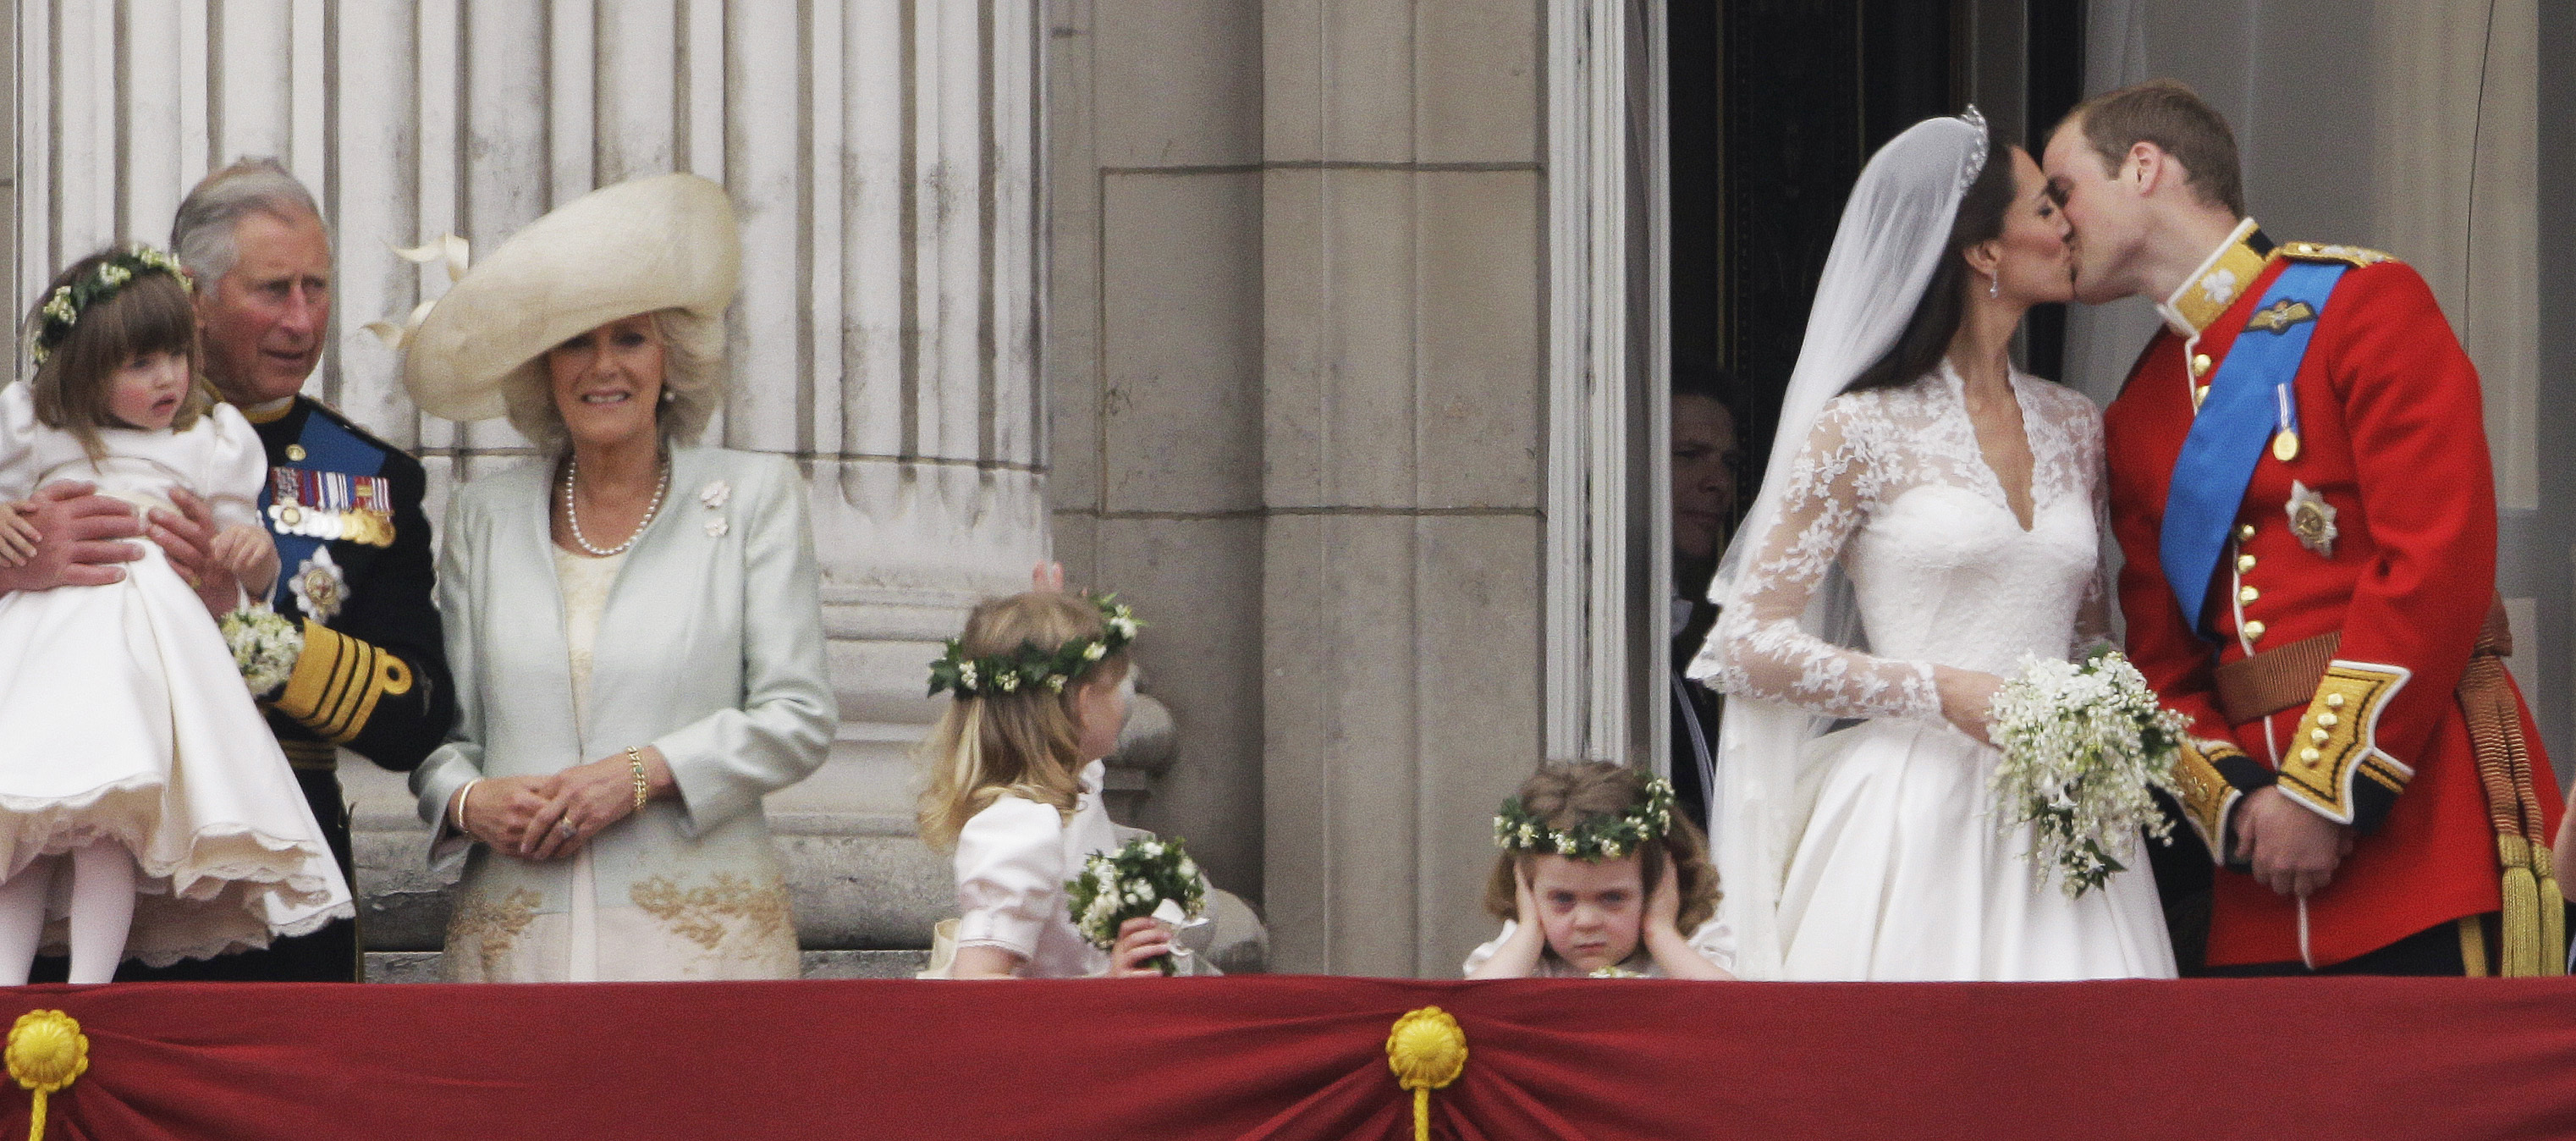 König Charles und Königin Camilla, als Prinzessin Kate und Prinz William nach ihrer königlichen Hochzeit im Jahr 2011 einen Kuss auf dem Balkon teilten